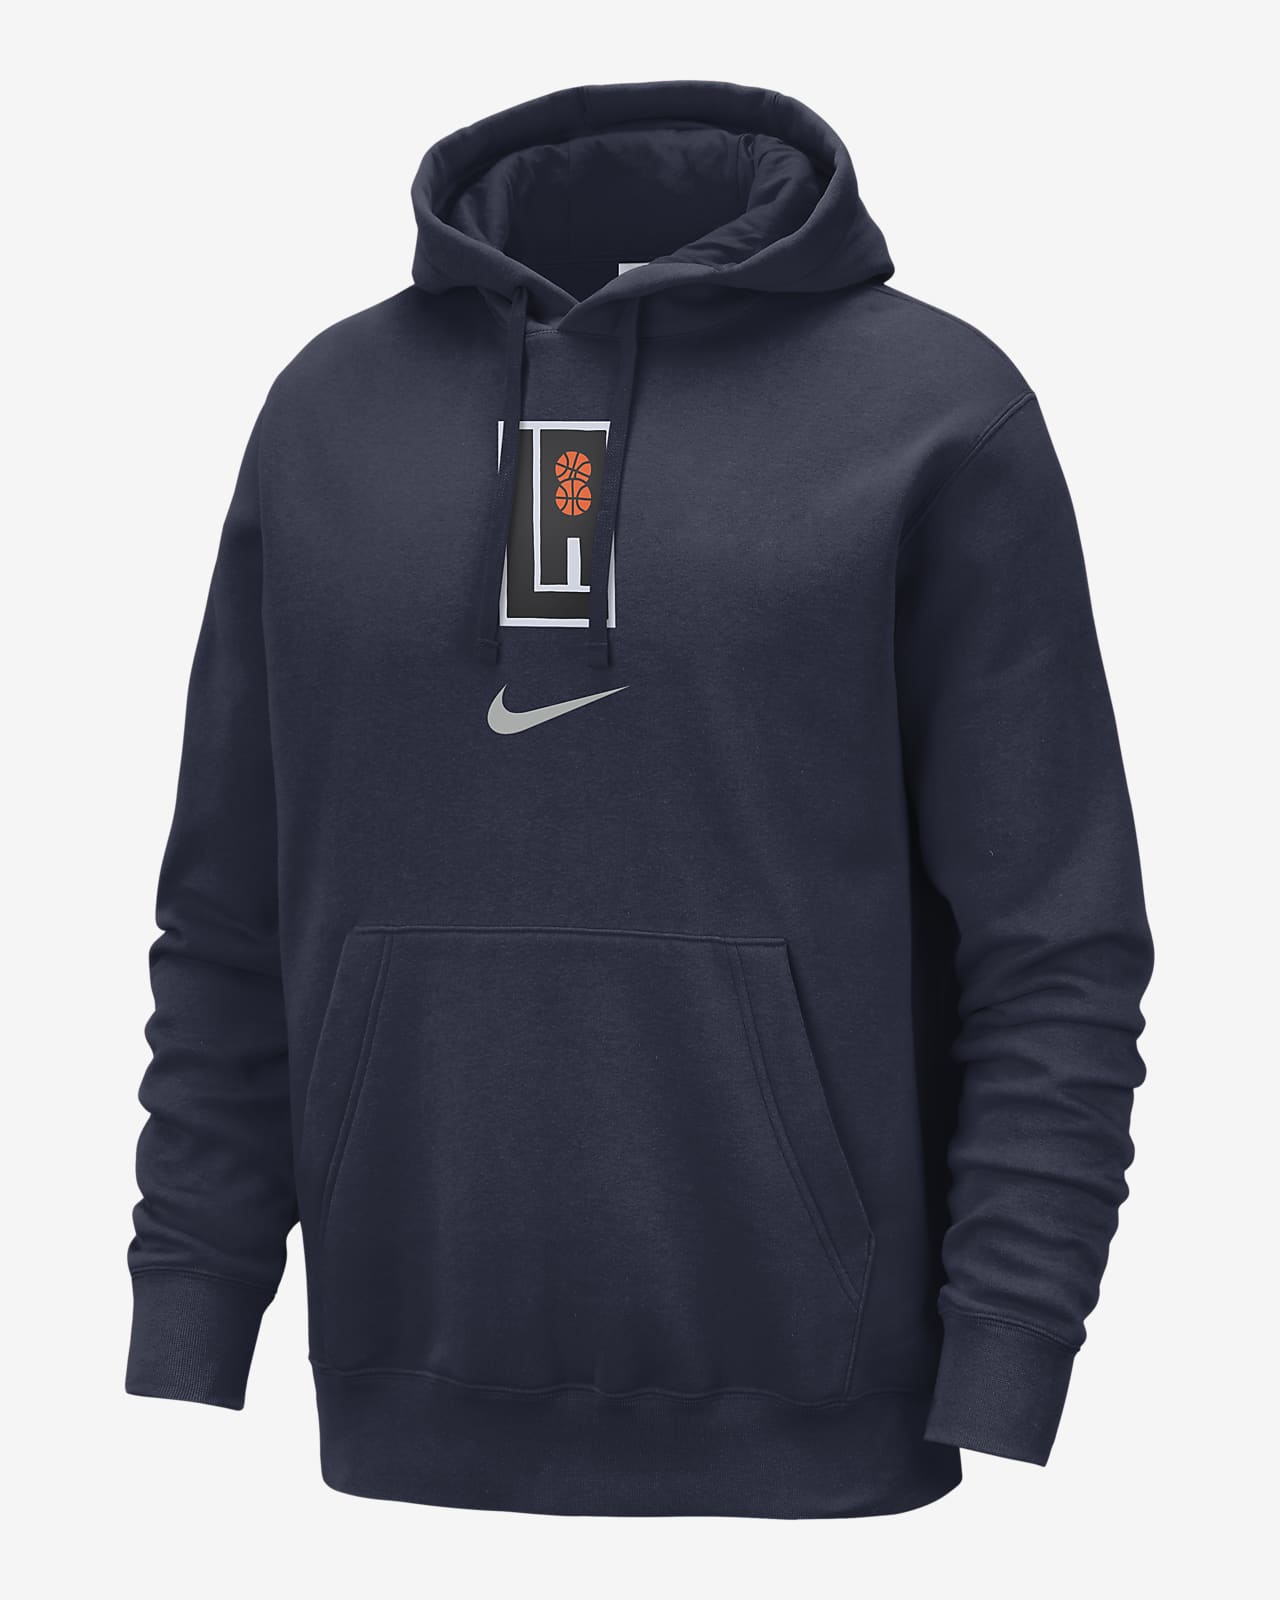 LA Clippers Club Fleece City Edition Sudadera con capucha Nike de la NBA - Hombre